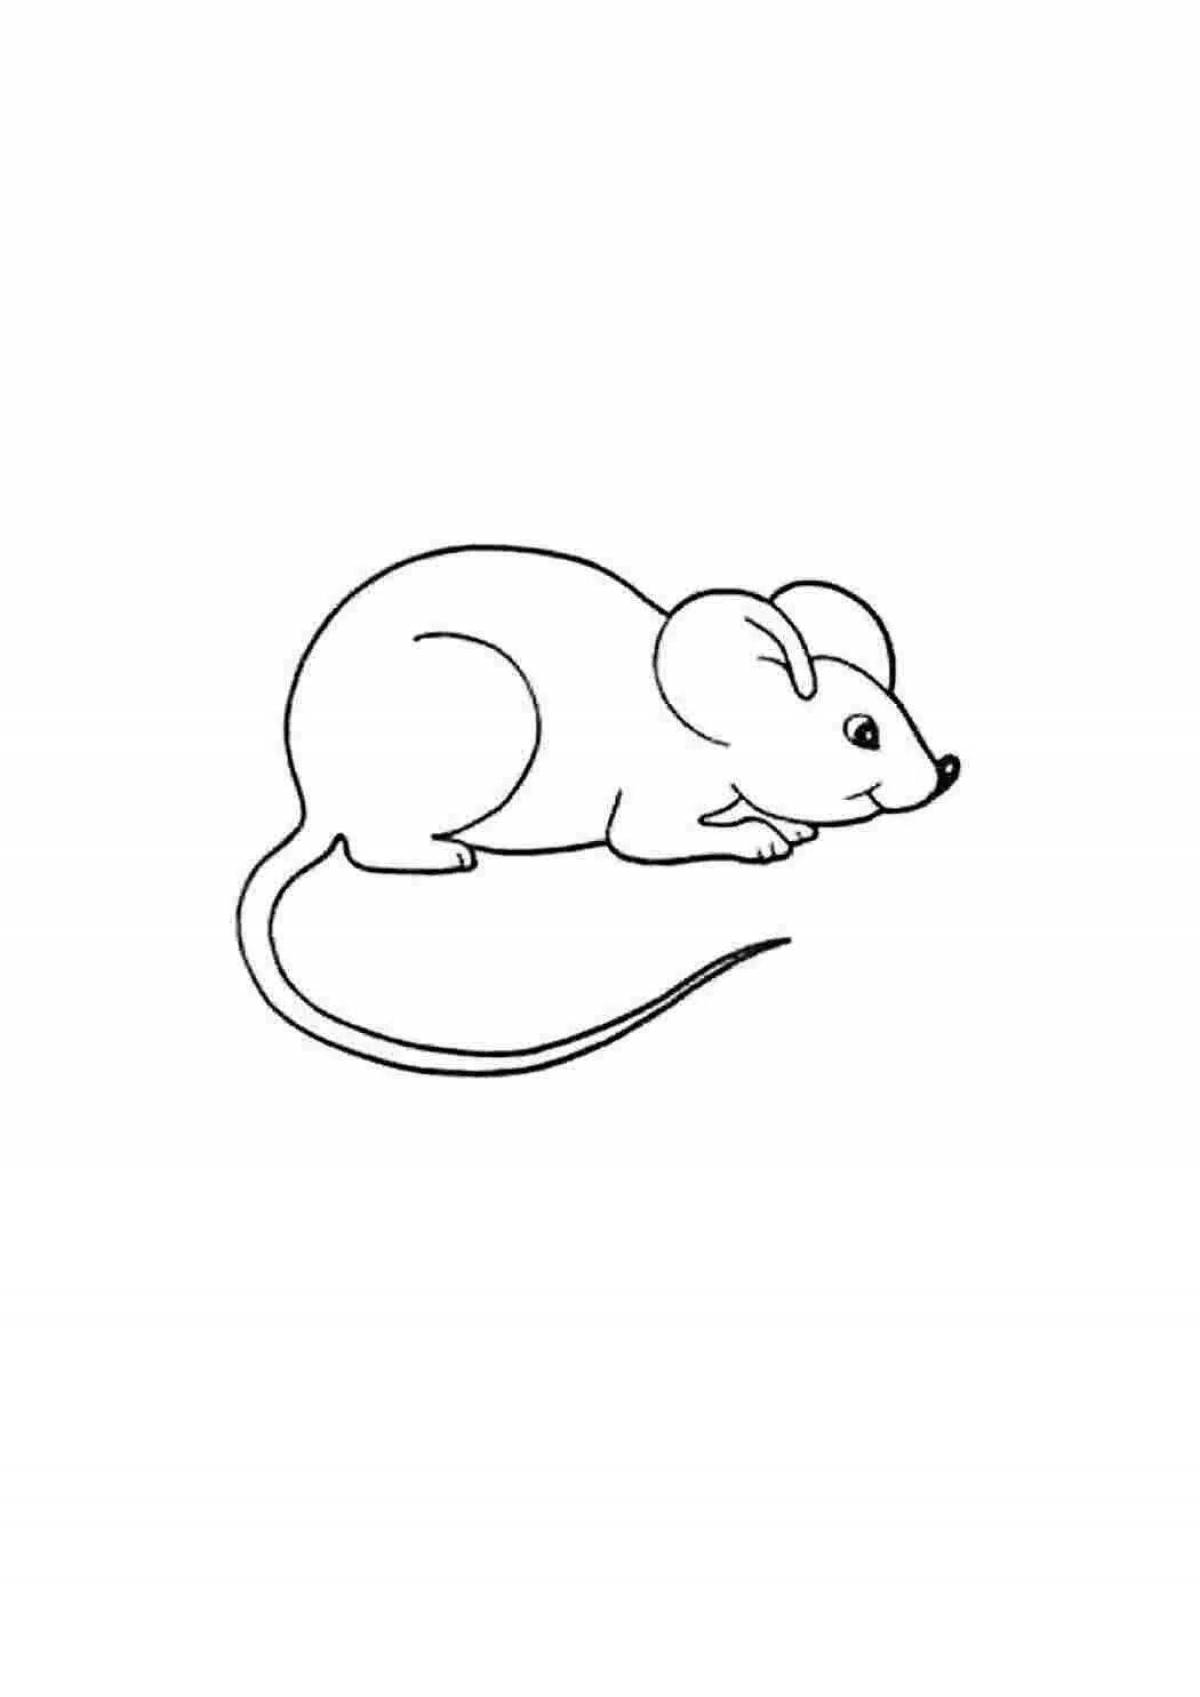 Как нарисовать мышку, выглядывающую из норки — пошаговый урок для начинающих художников